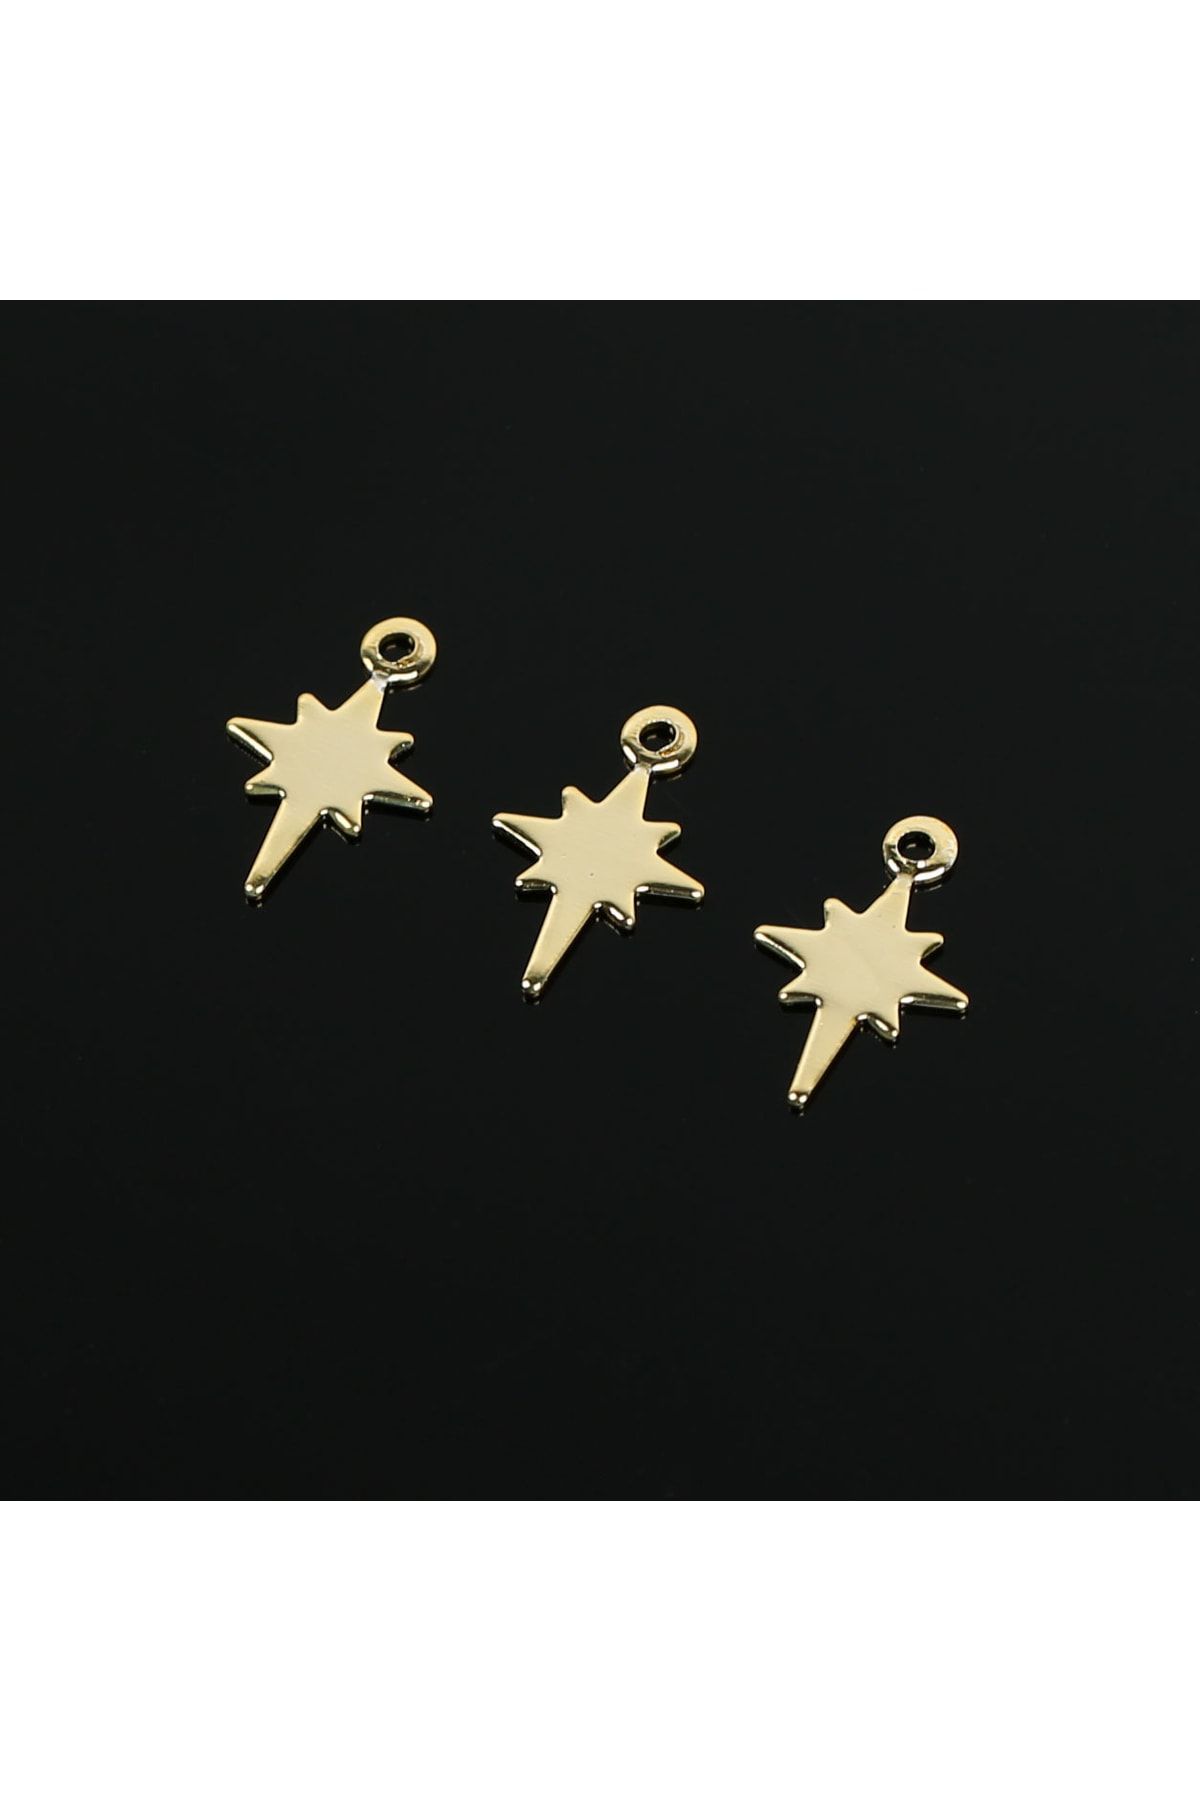 yfhobi 6 Adet- 12 mm Altın Kaplama (kararmaz) Kutup Yıldızı Desenli Pul, Takı Malzemesi, Metal Pul, #1885a